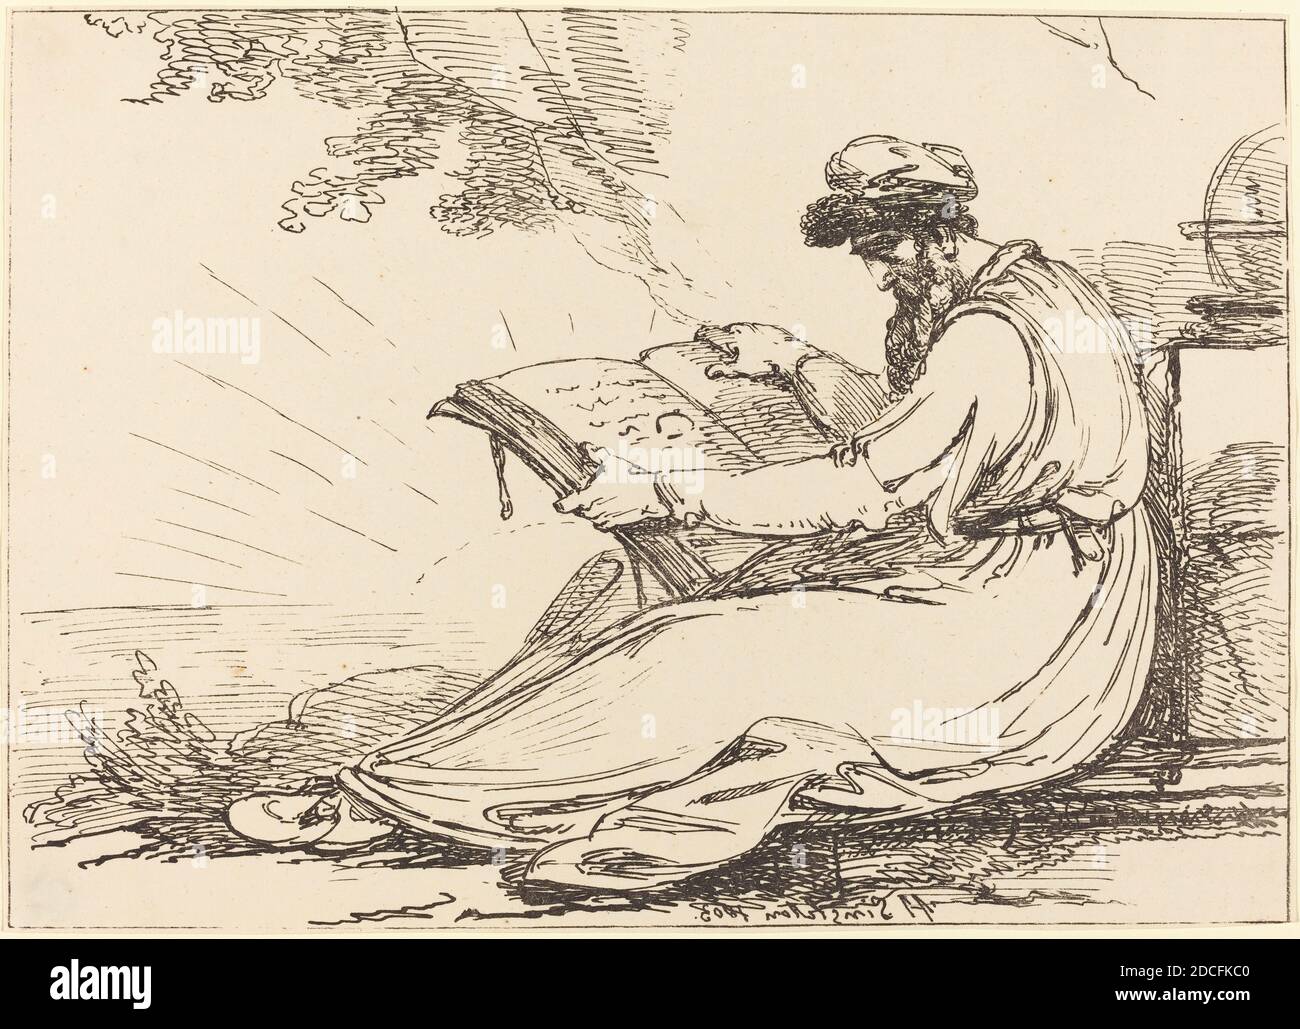 Henry Singleton, (artiste), Britannique, 1766 - 1839, Oriental avec Beard, lecture d'un livre, spécimens de polyautographie, (série), 1803, lithographie stylo-et-tusche Banque D'Images